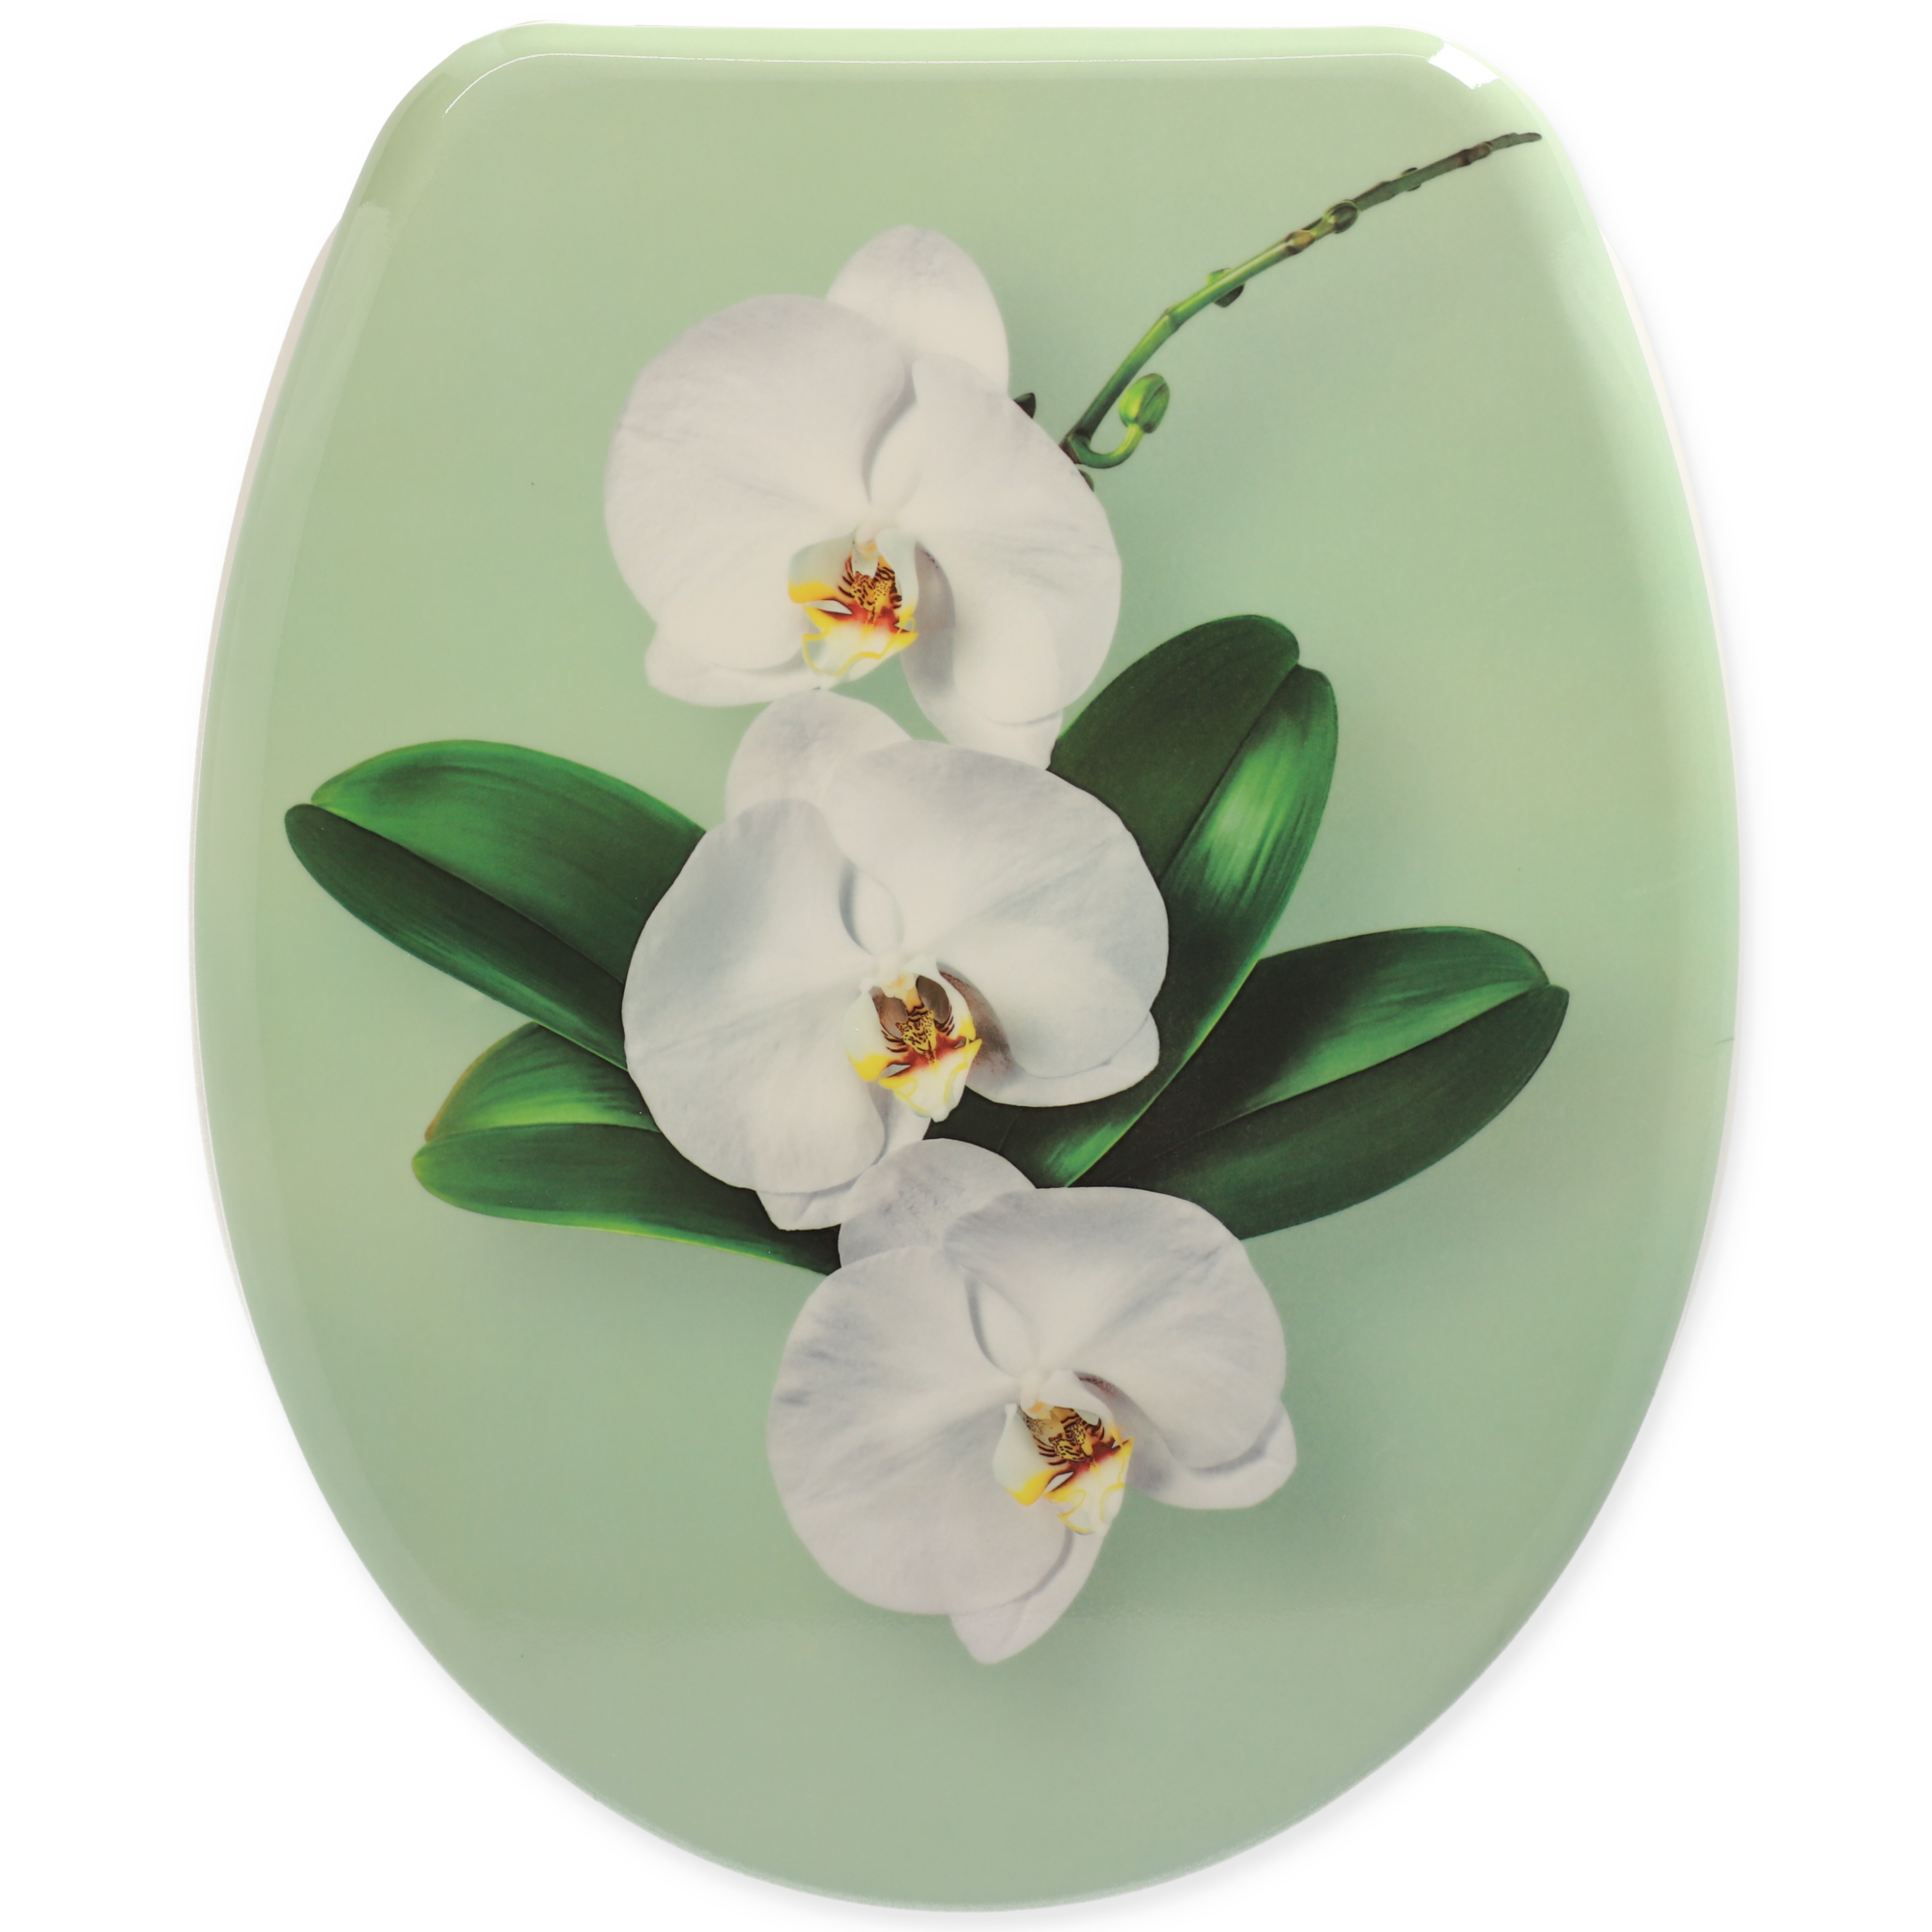 WC-Sitz 'Orchideen' mit Absenkautomatik grün/weiß + product picture